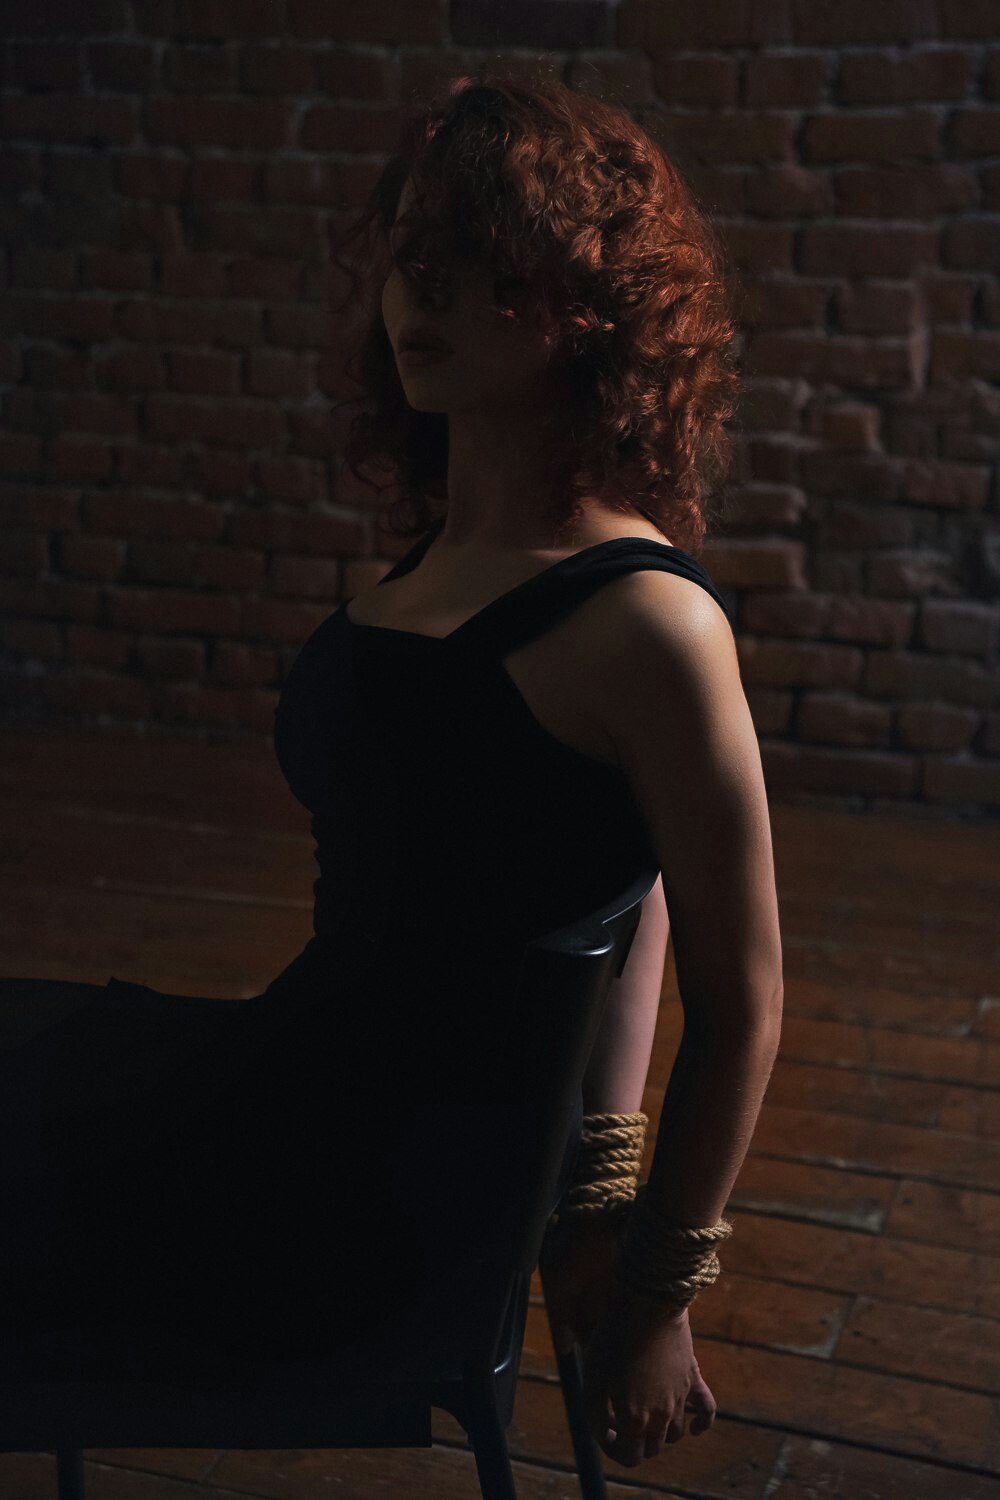 Галерея Связанная Черная вдова на допросе в восхитительном косплее по «Мстителям» - 1 фото